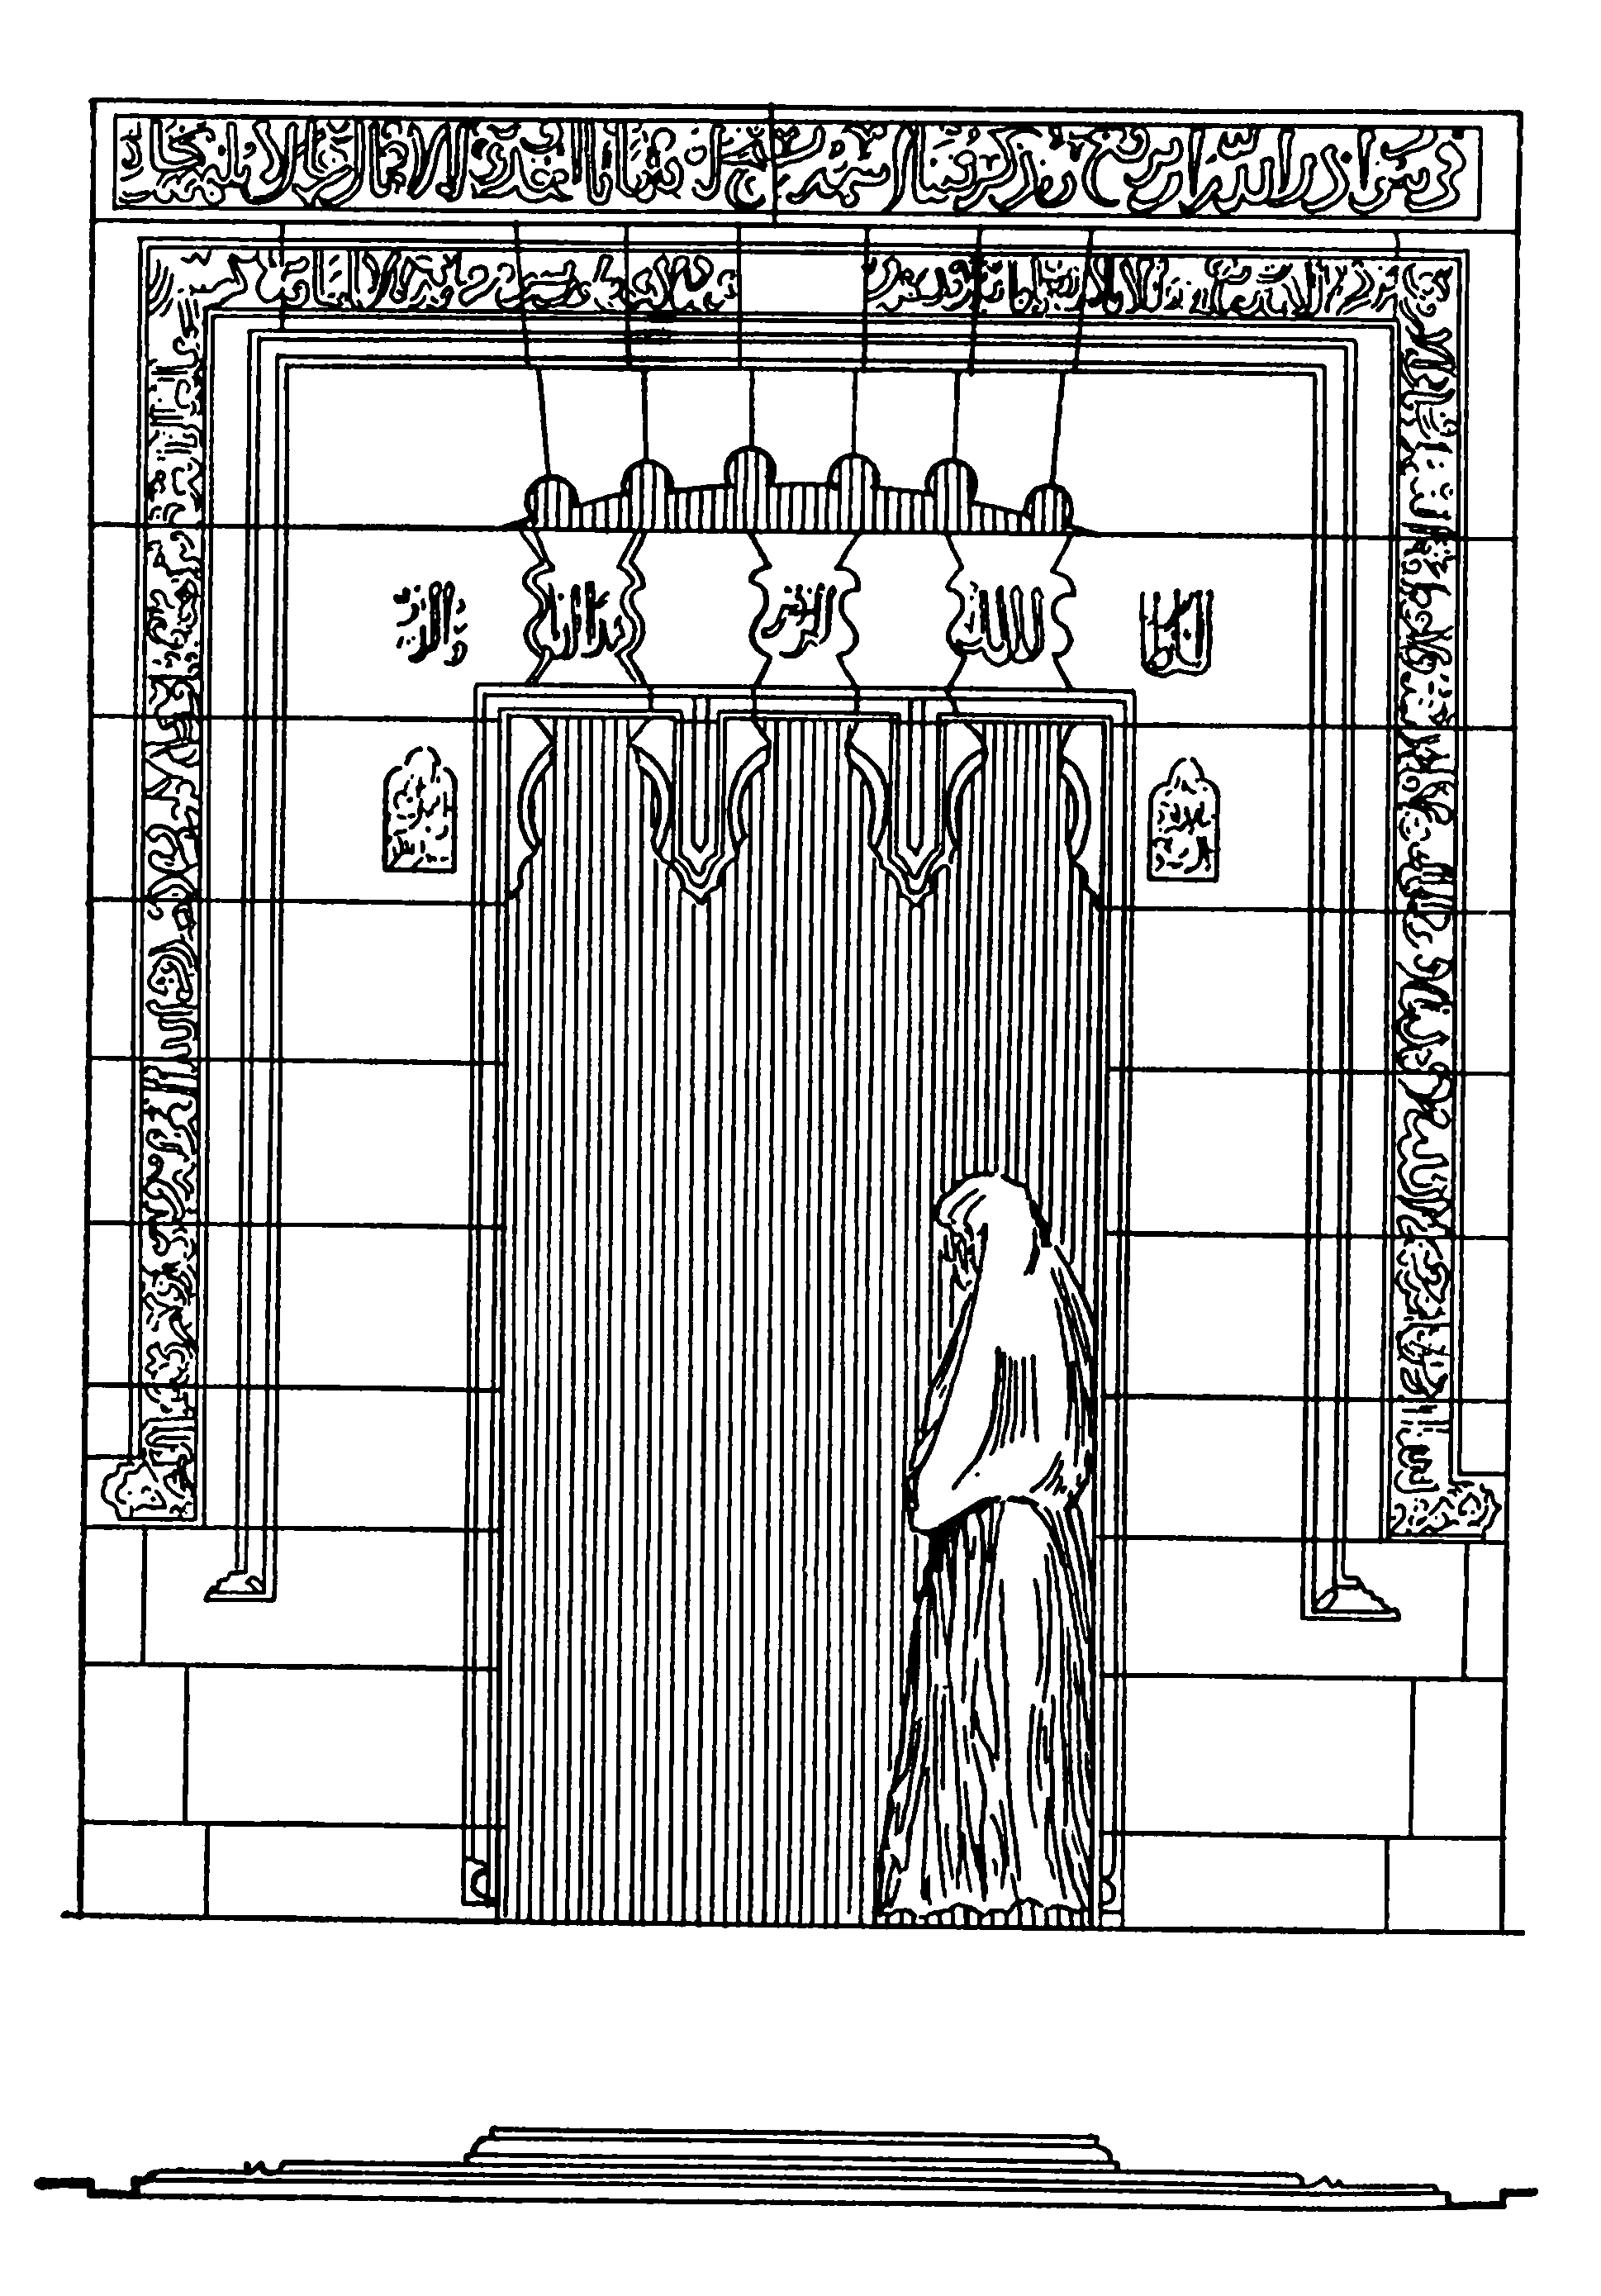 21. Мосул. Мавзолей Аун ад-Дин, XIII в. Общий вид, оформление входа